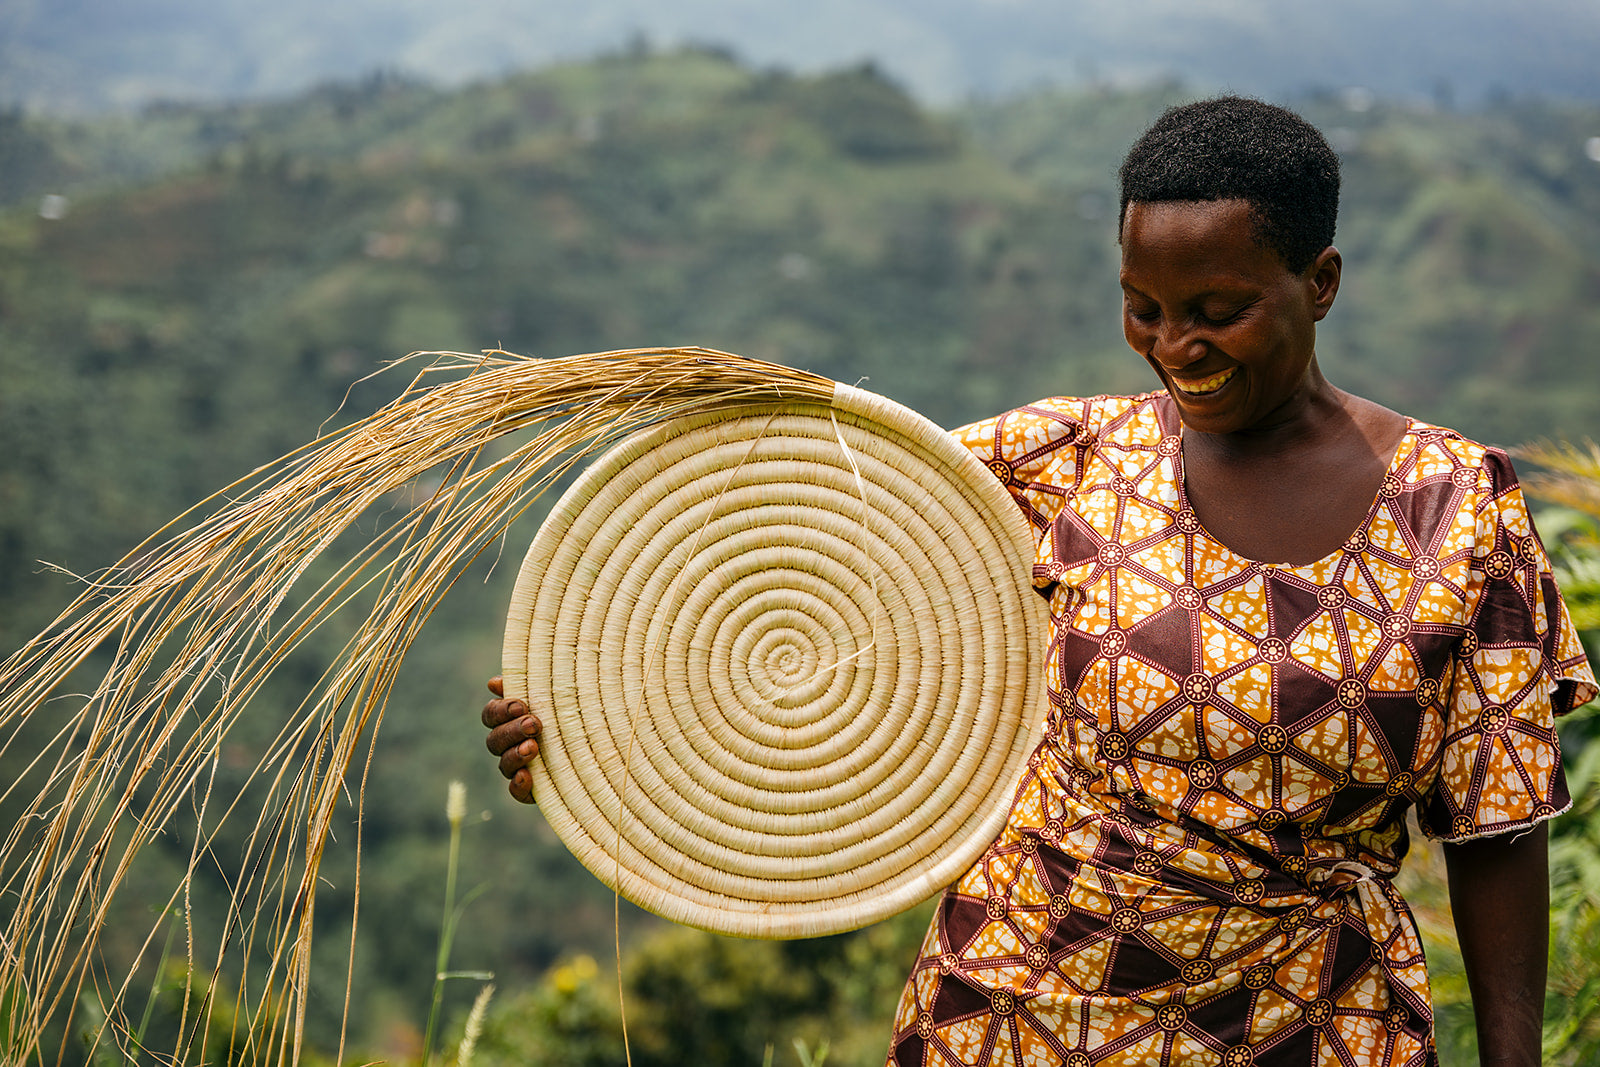 Kasese Basket Weavers in Uganda